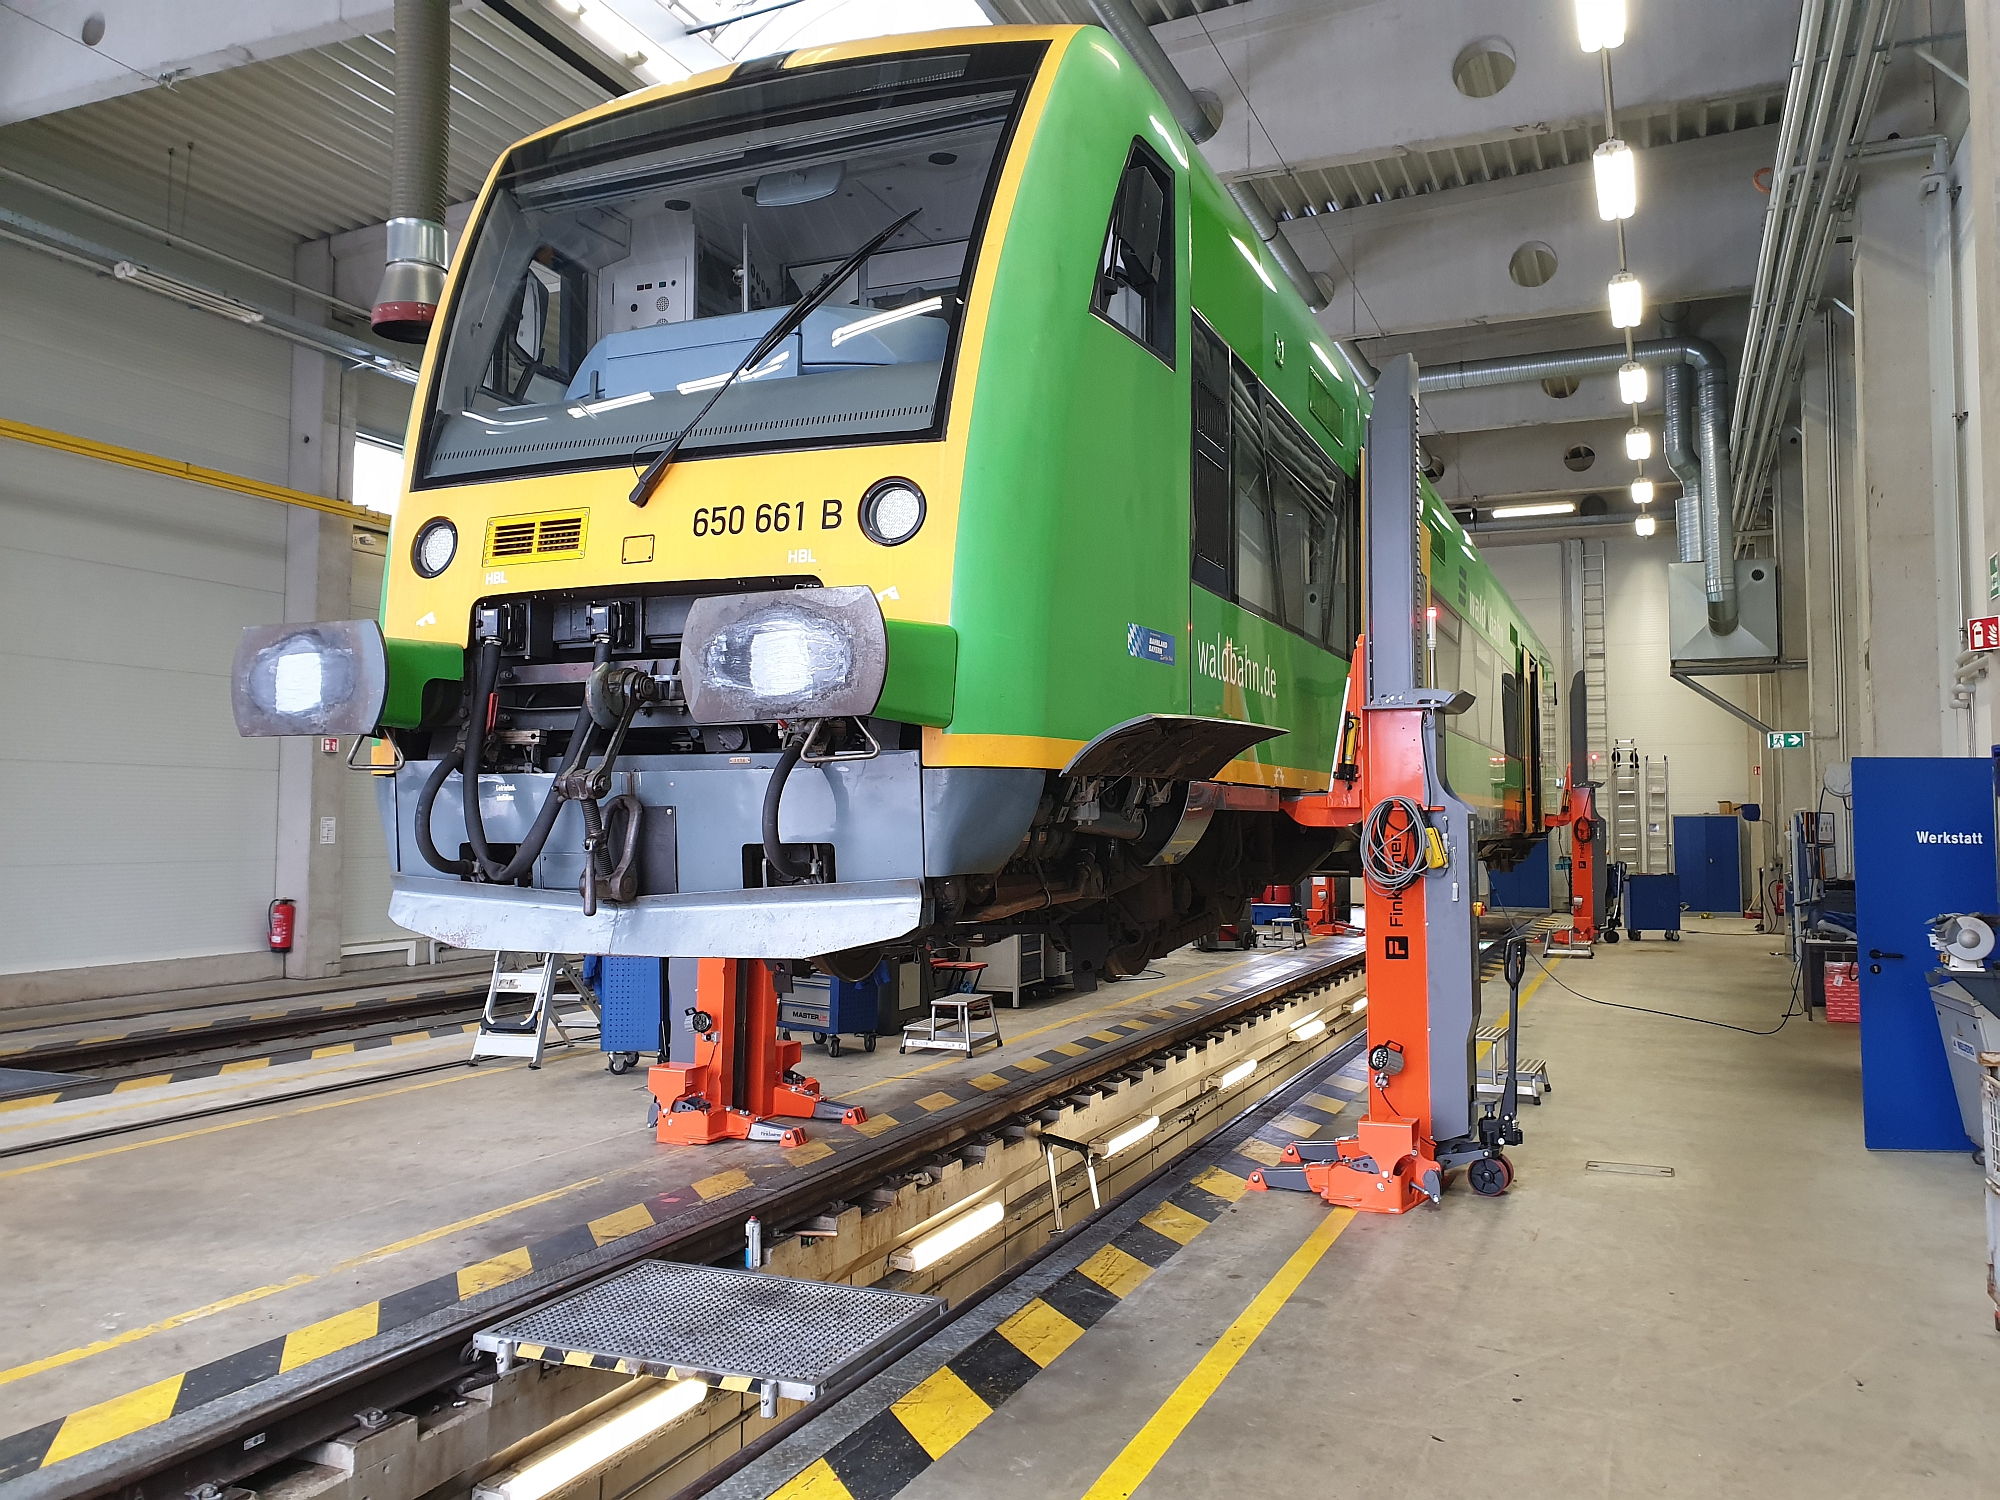 Colonnes mobiles équippées d'un bec ajustable avec un train régional dans l'atelier ferroviaire.